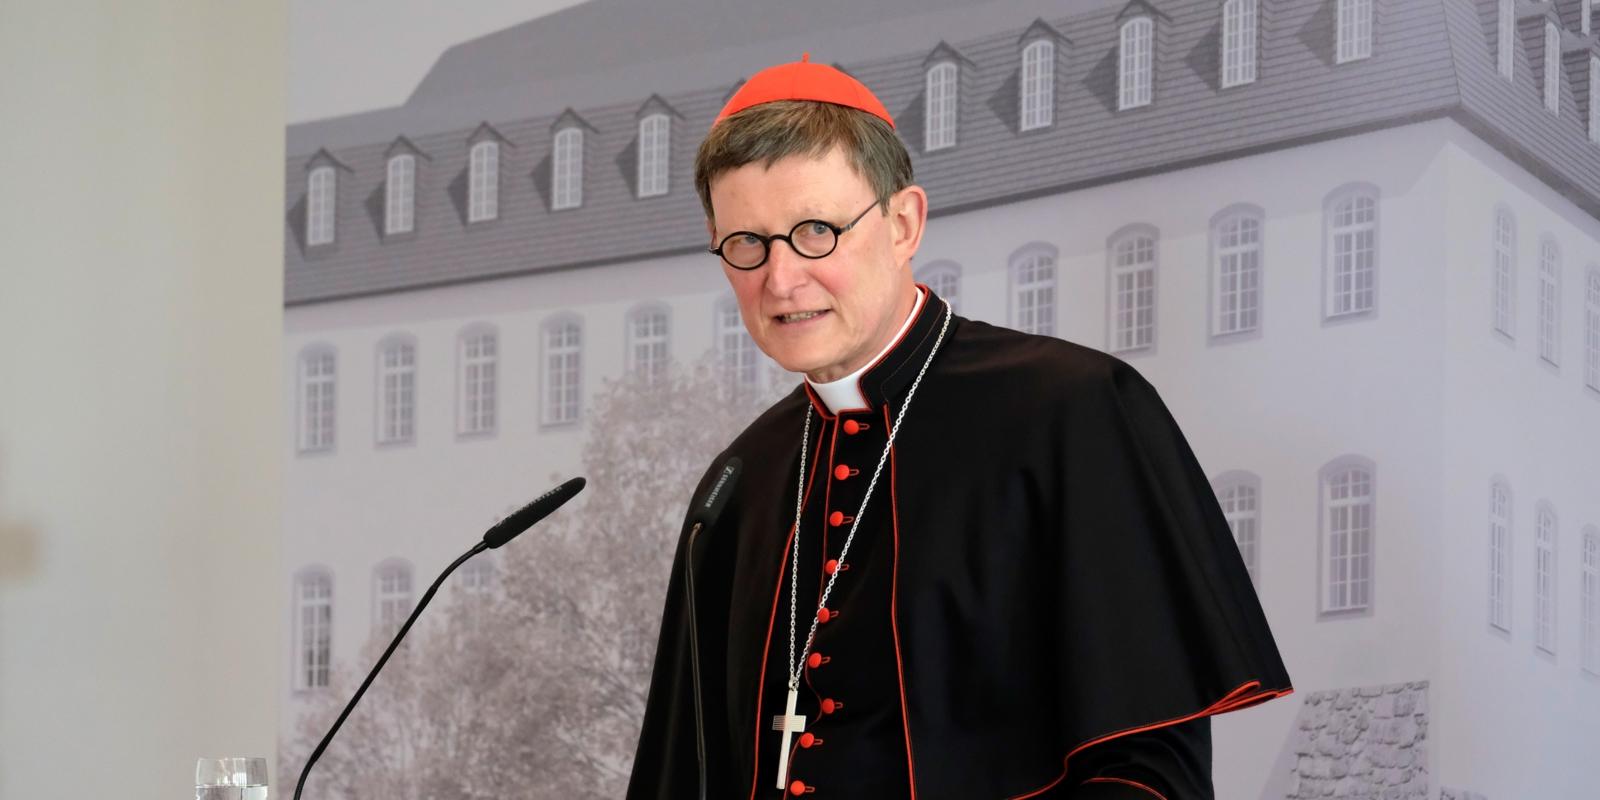 Erzbischof Rainer Maria Kardinal Woelki